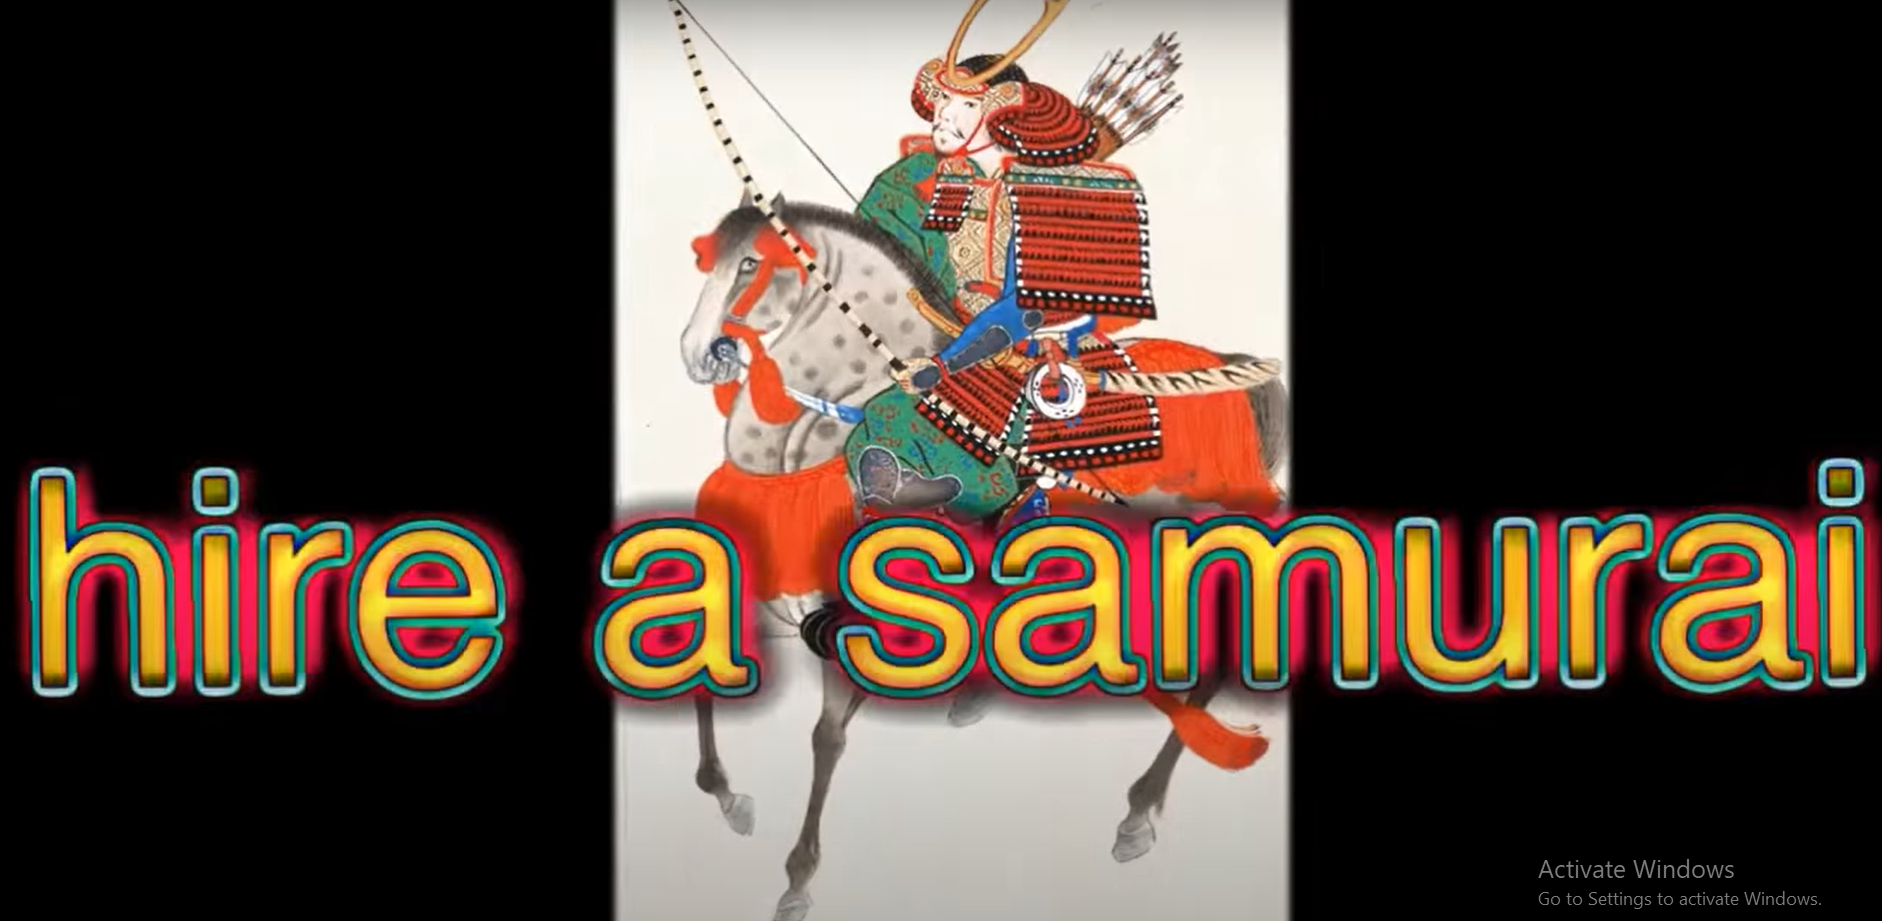 High Quality hire a samurai Blank Meme Template